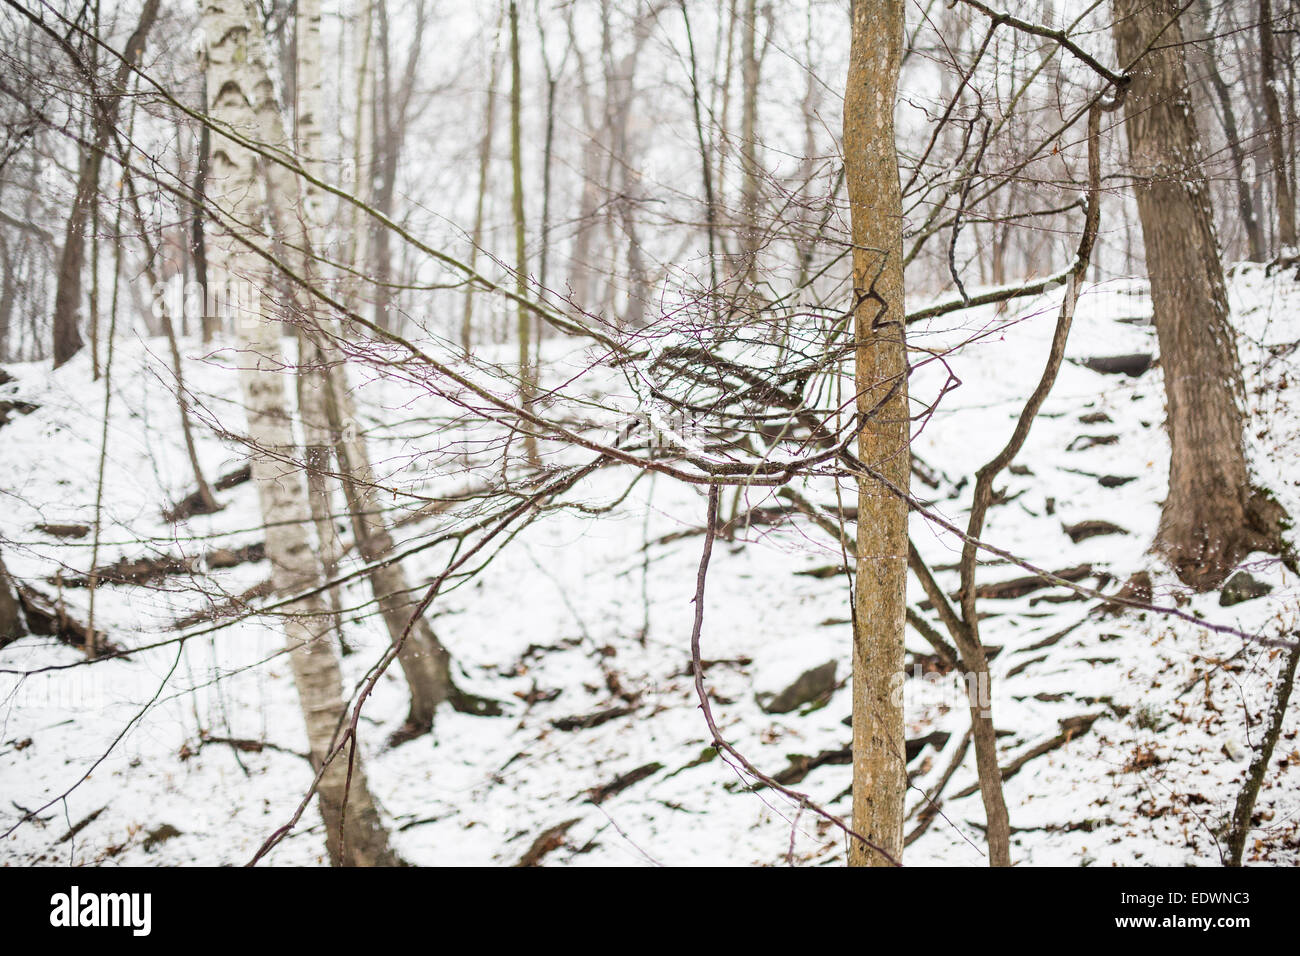 Un manojo de ramas crean un nudo como formación en el bosque en invierno Foto de stock